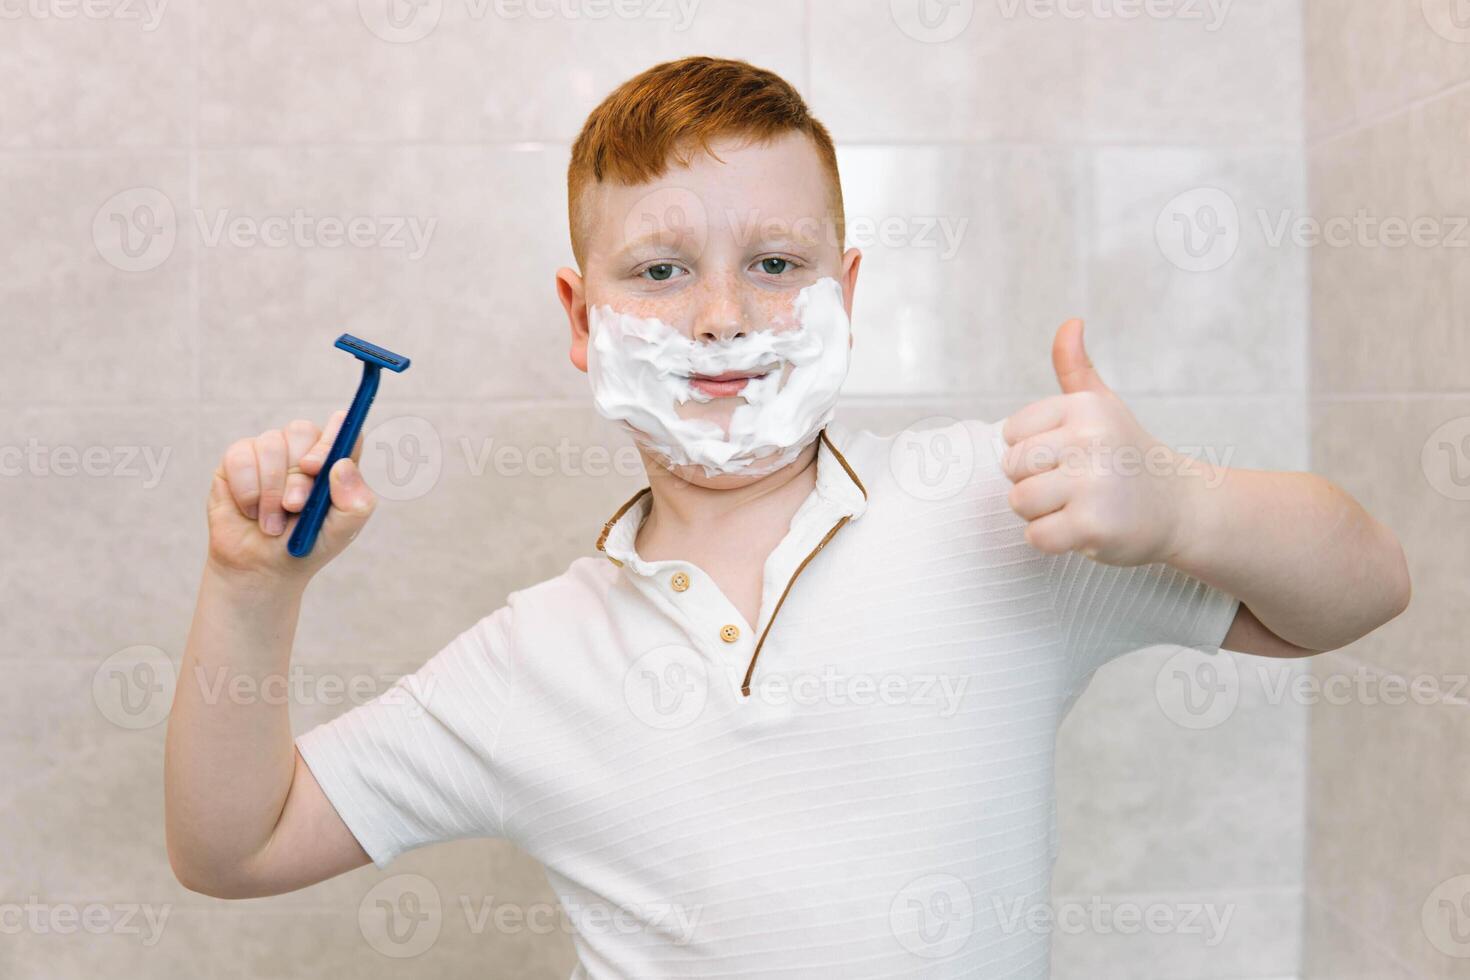 rolig pojke i de bad med rakning grädde på hans ansikte och rakning rakapparat foto